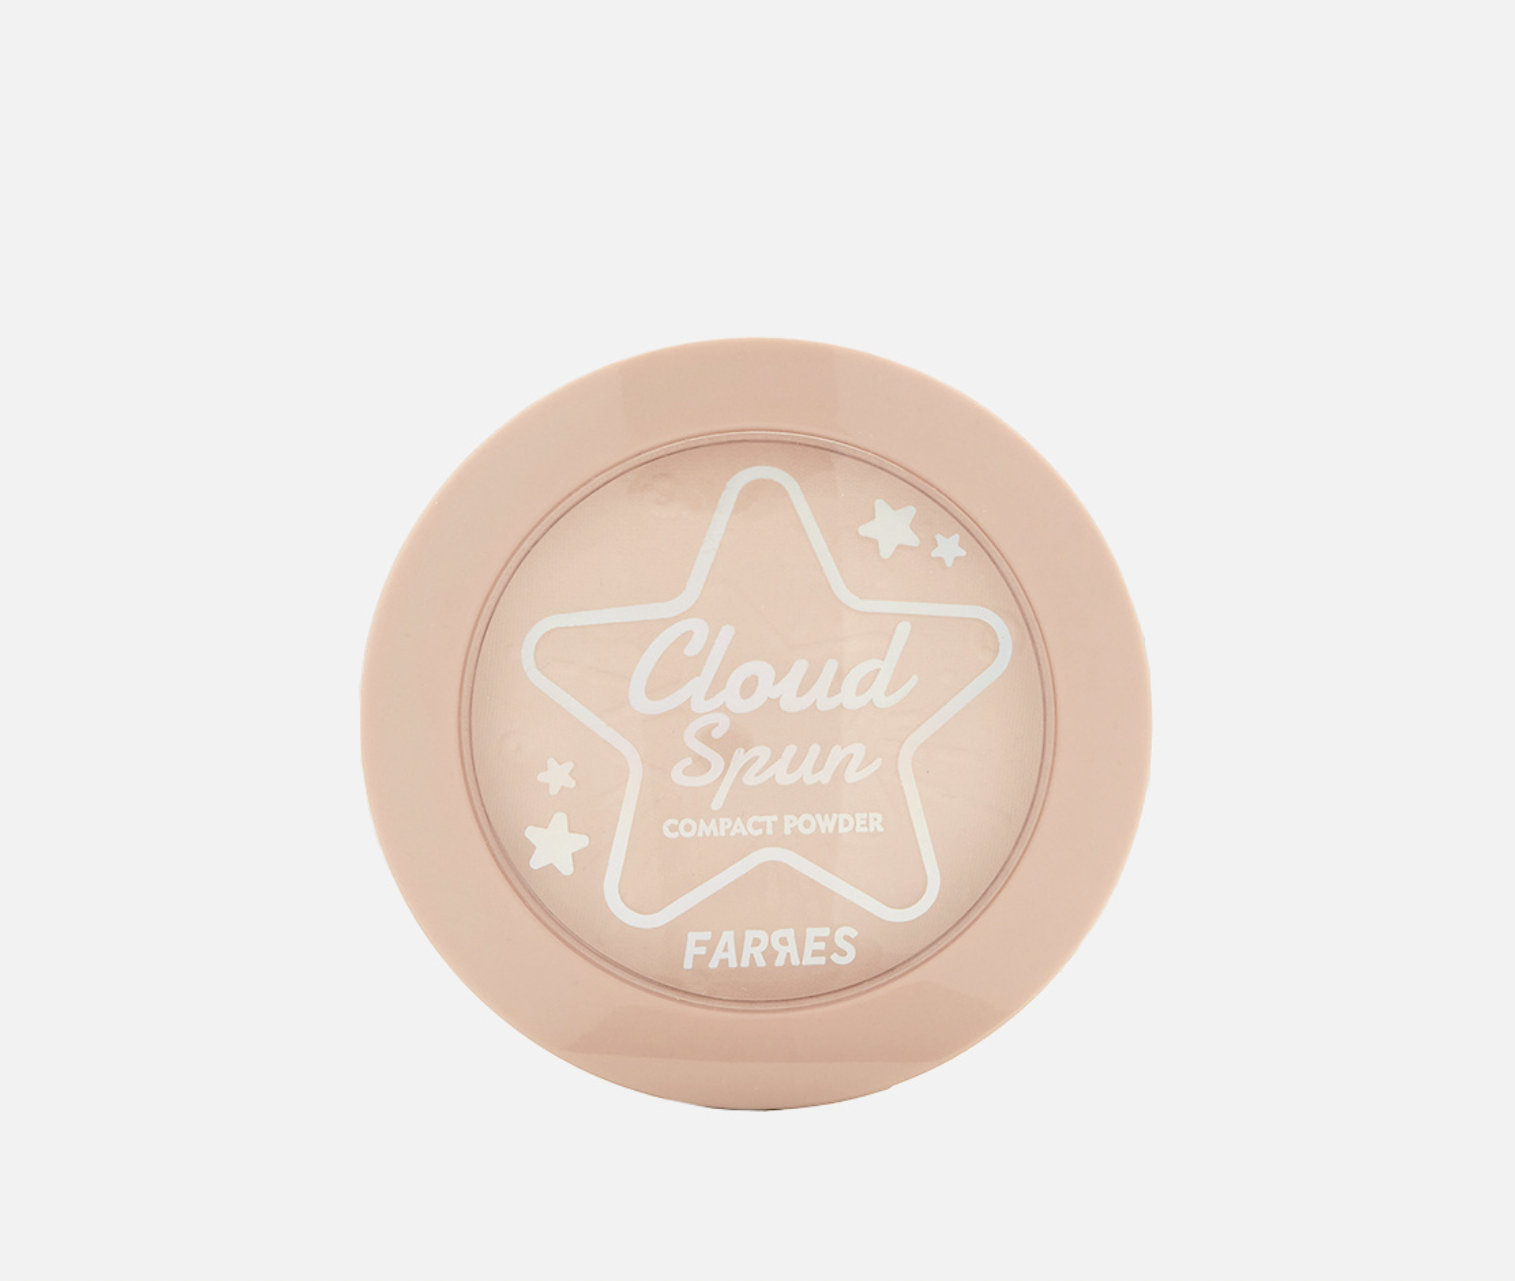   / Farres -     Cloud Spun 3026-01, 8,6 